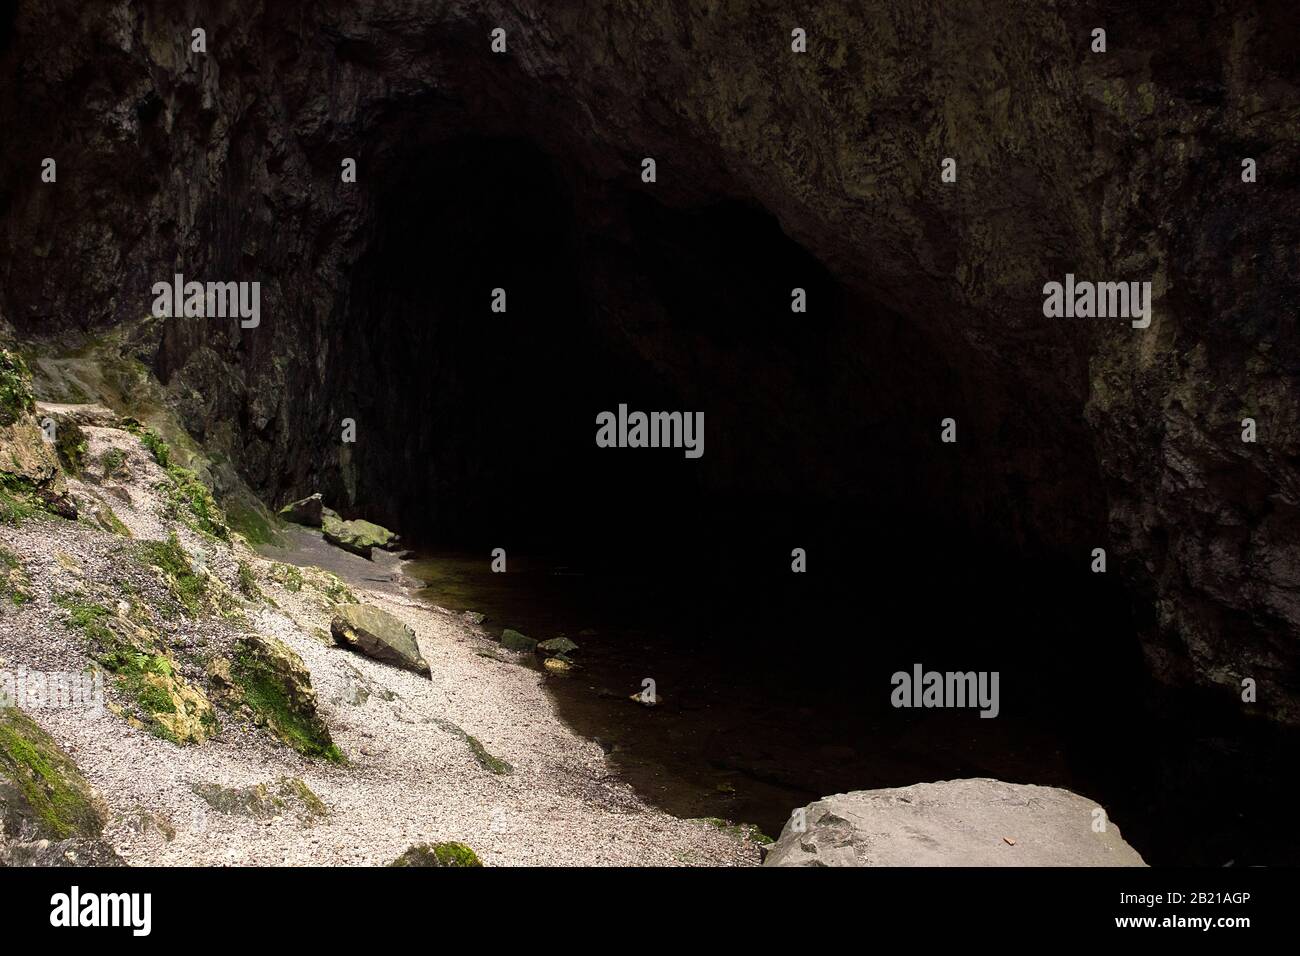 Malerische Landschaft in der U-Bahn. Ufer eines unterirdischen Sees, der von Felsen umgeben ist. Dunkelheit im Höhlenkorridor und Licht, das auf die Bank fällt. Speläologie Backgr Stockfoto